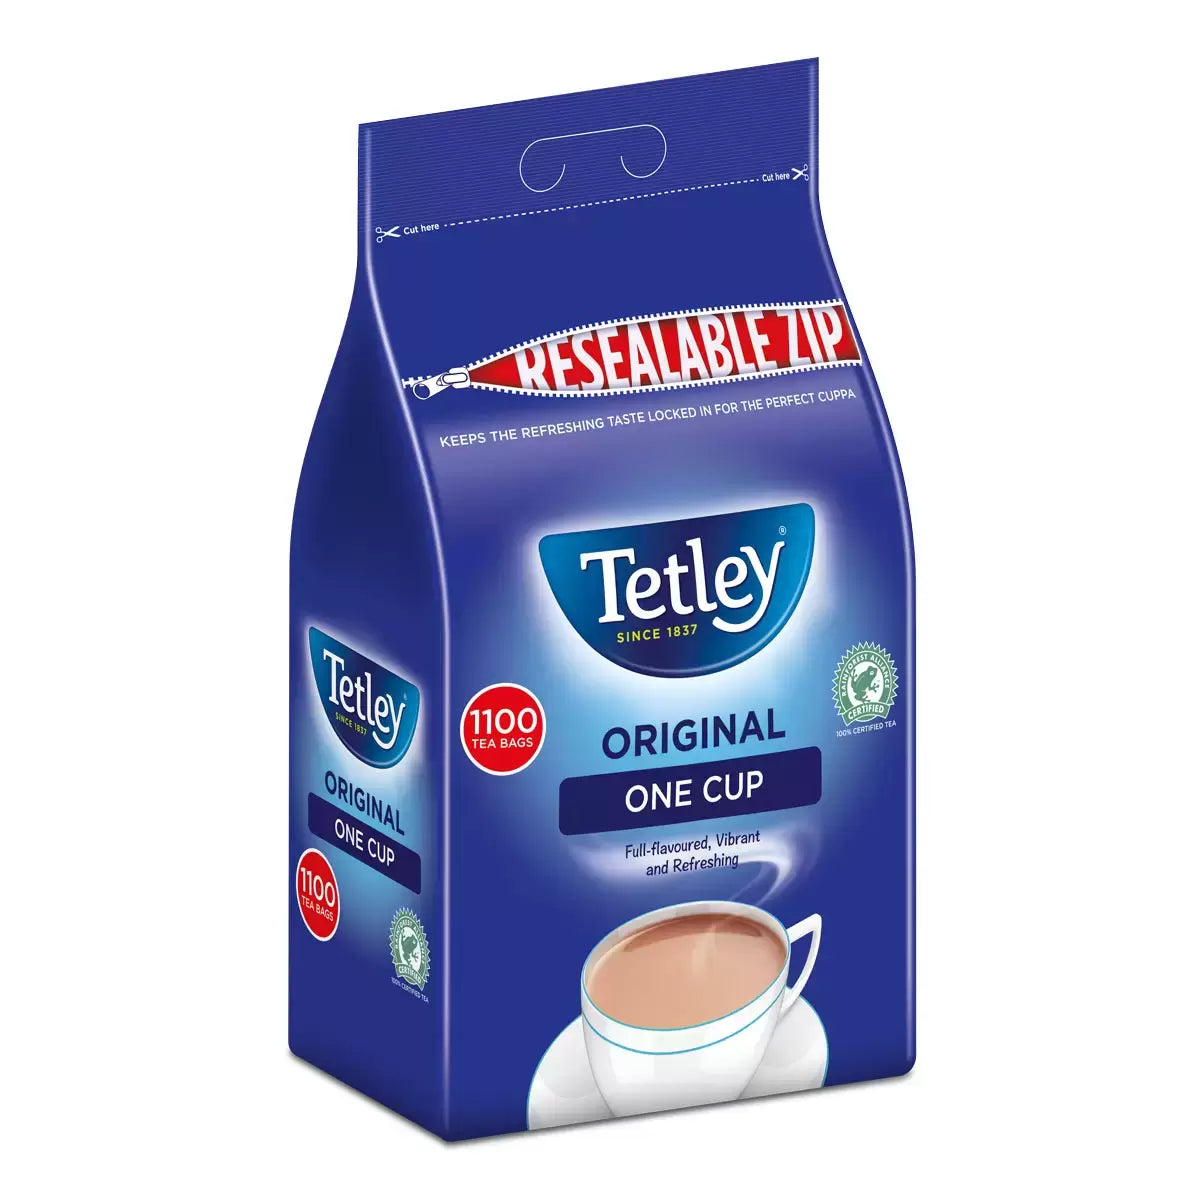 Tetley 1 Cup Tea Bags - Pack of 1100